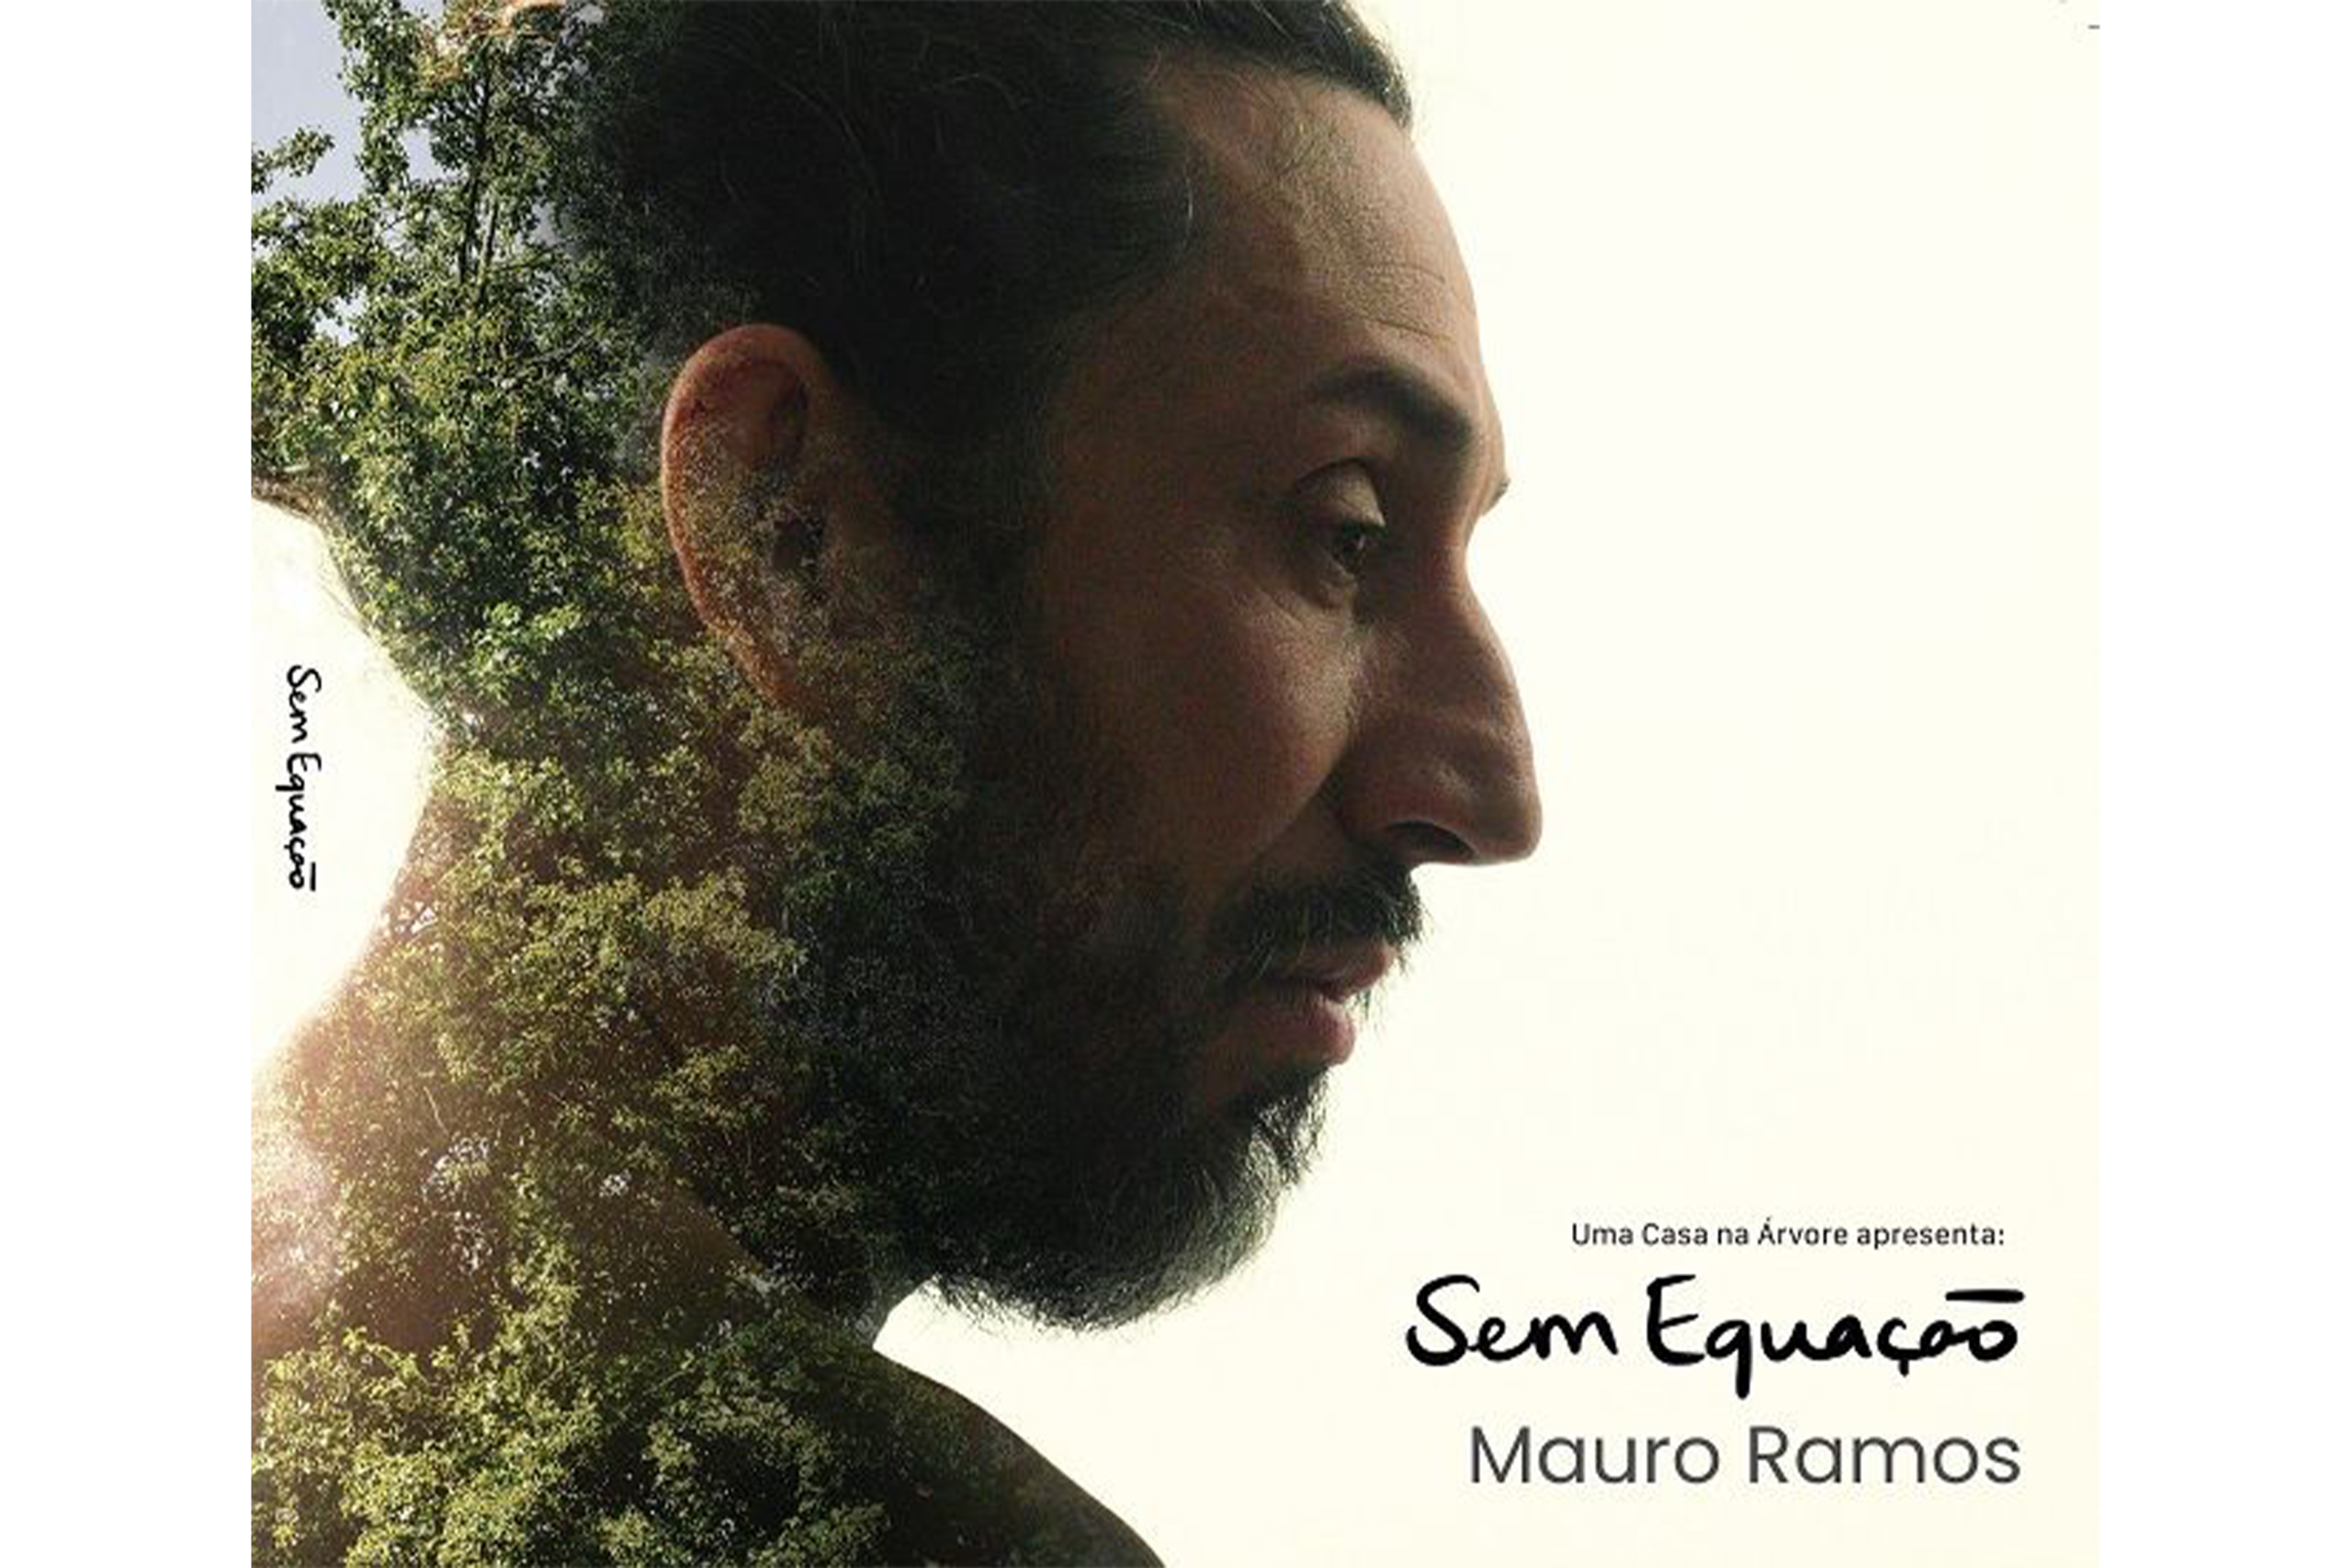 Mauro Ramos – Sem equação